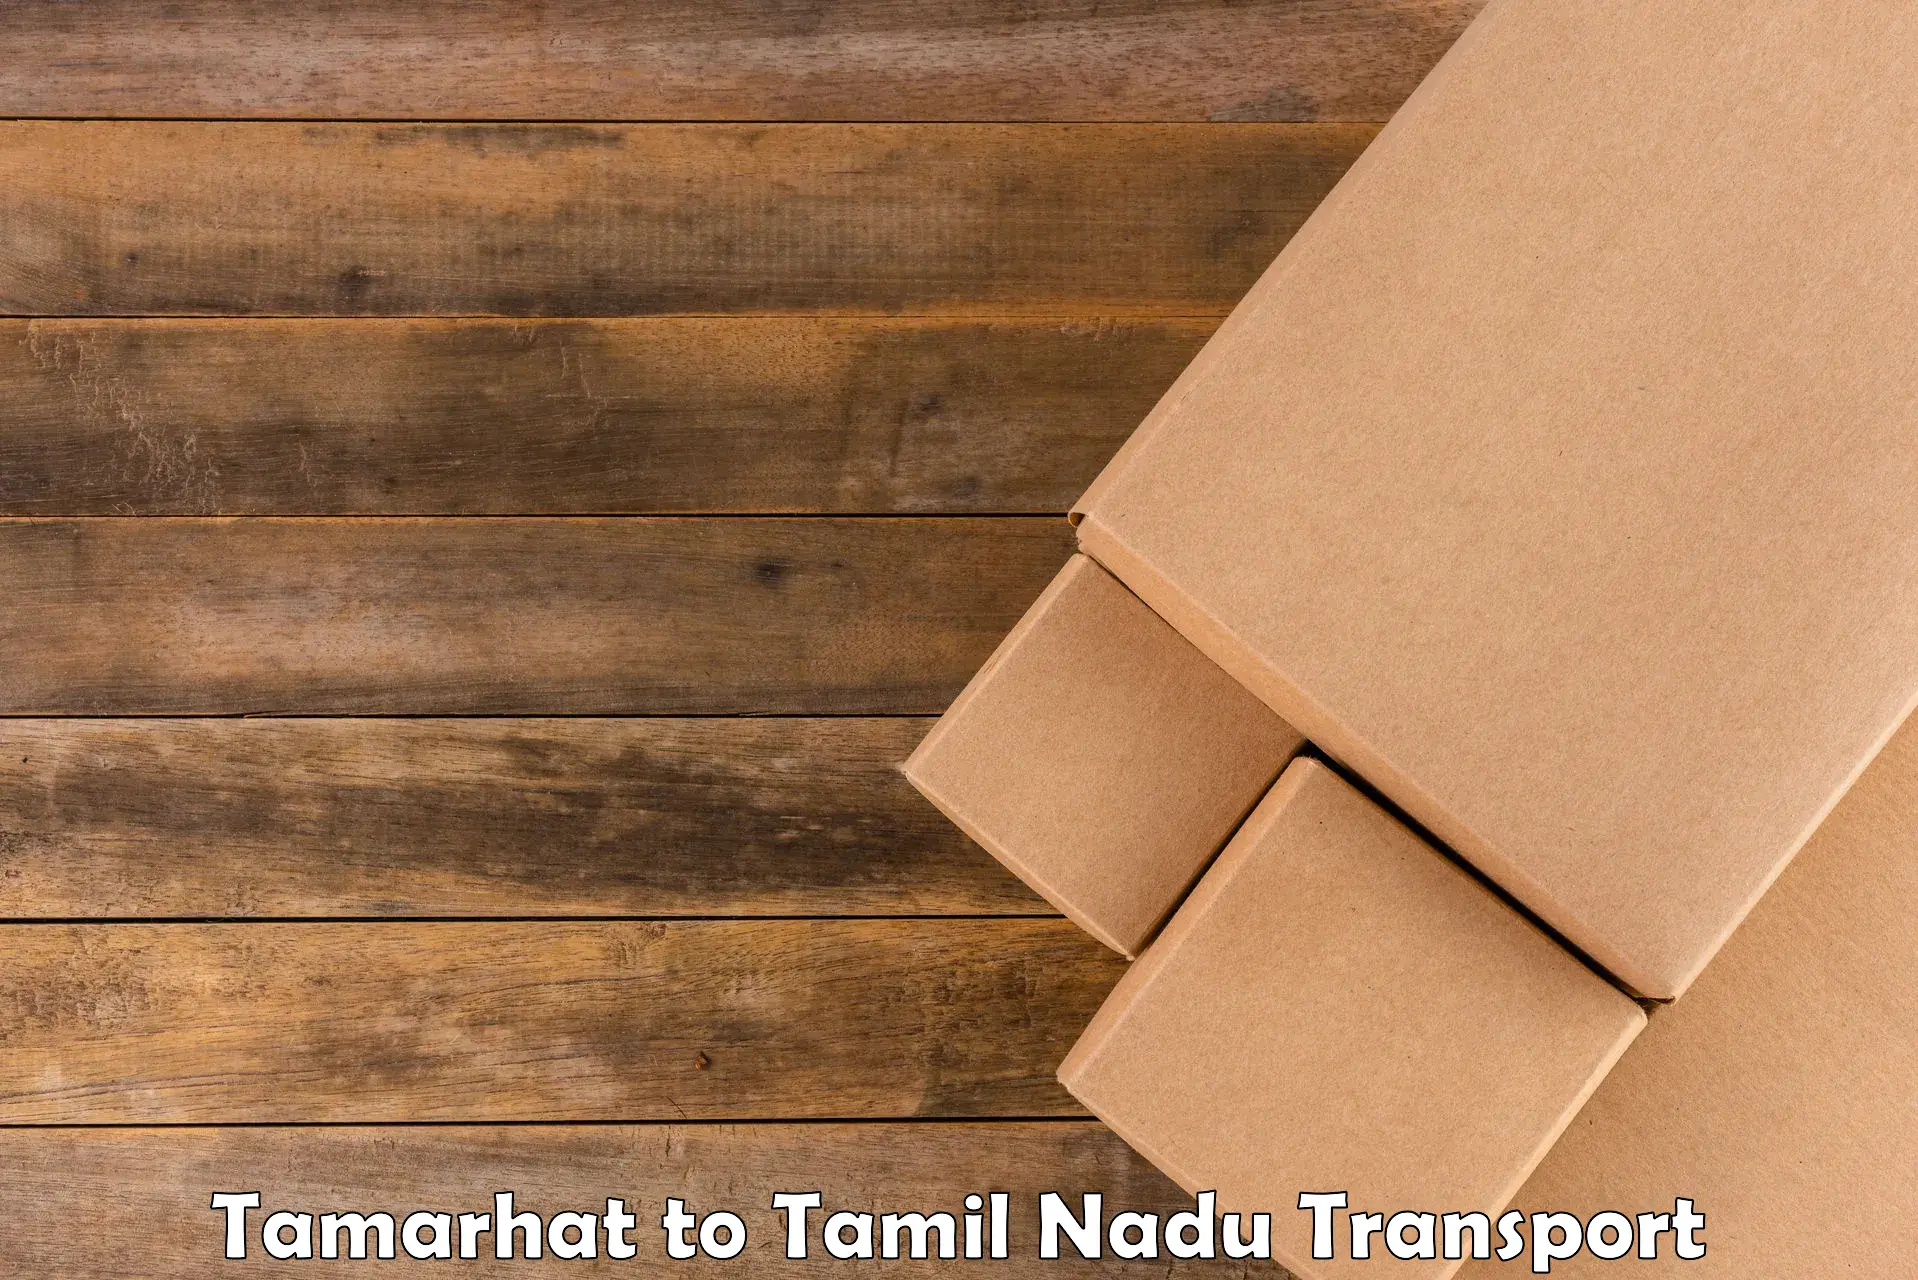 Pick up transport service Tamarhat to Namakkal